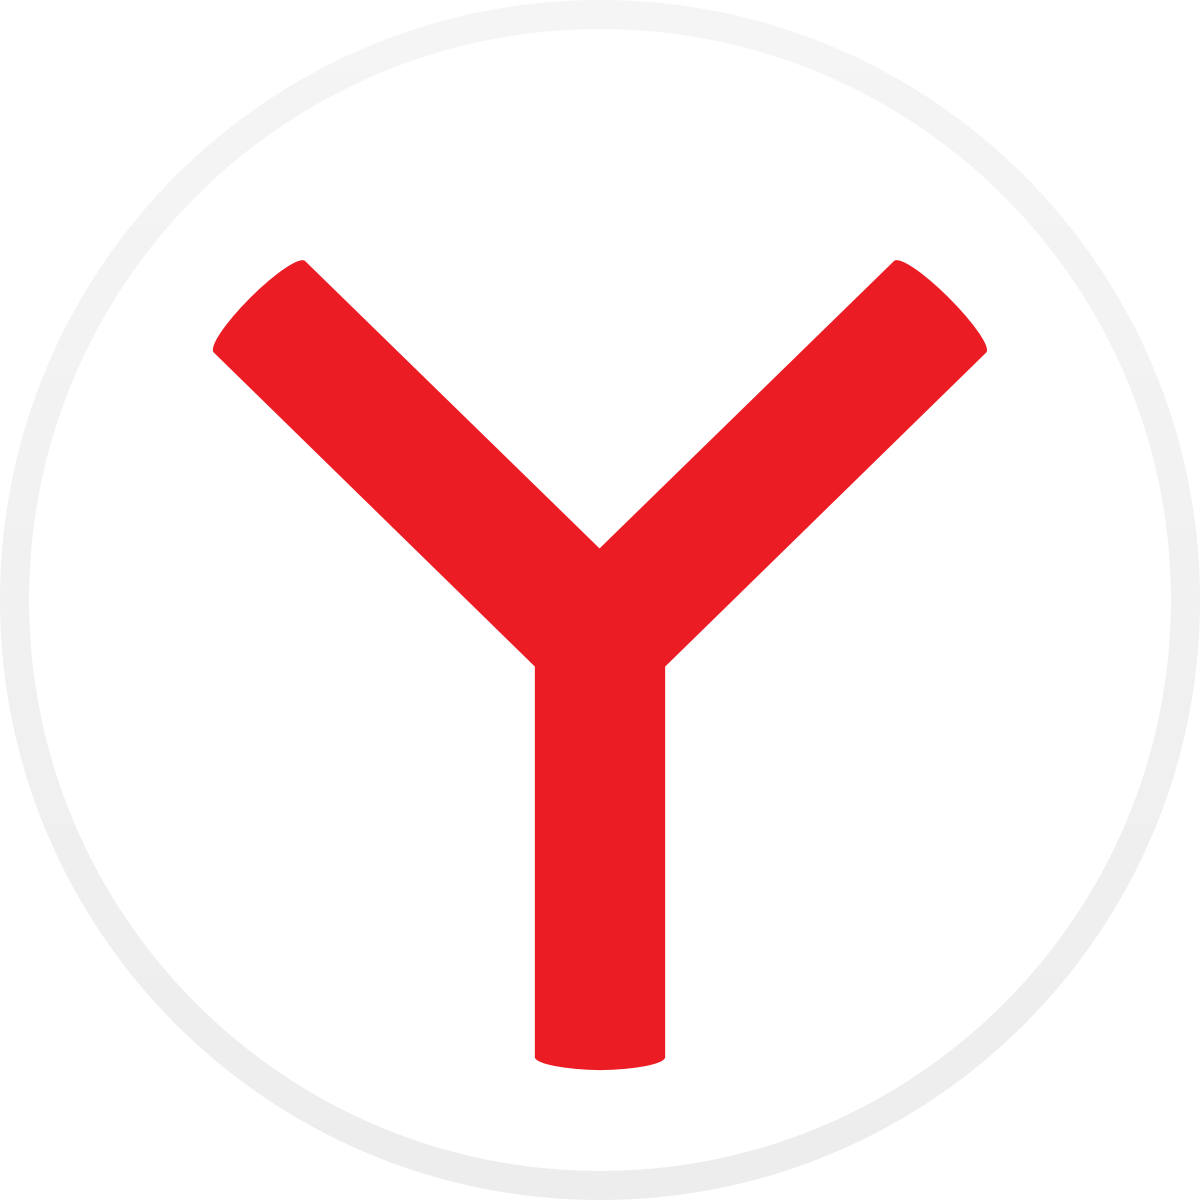 Яндекс Браузер 24.1.5.803 С нейросетями Последняя версия для Windows 10, 11